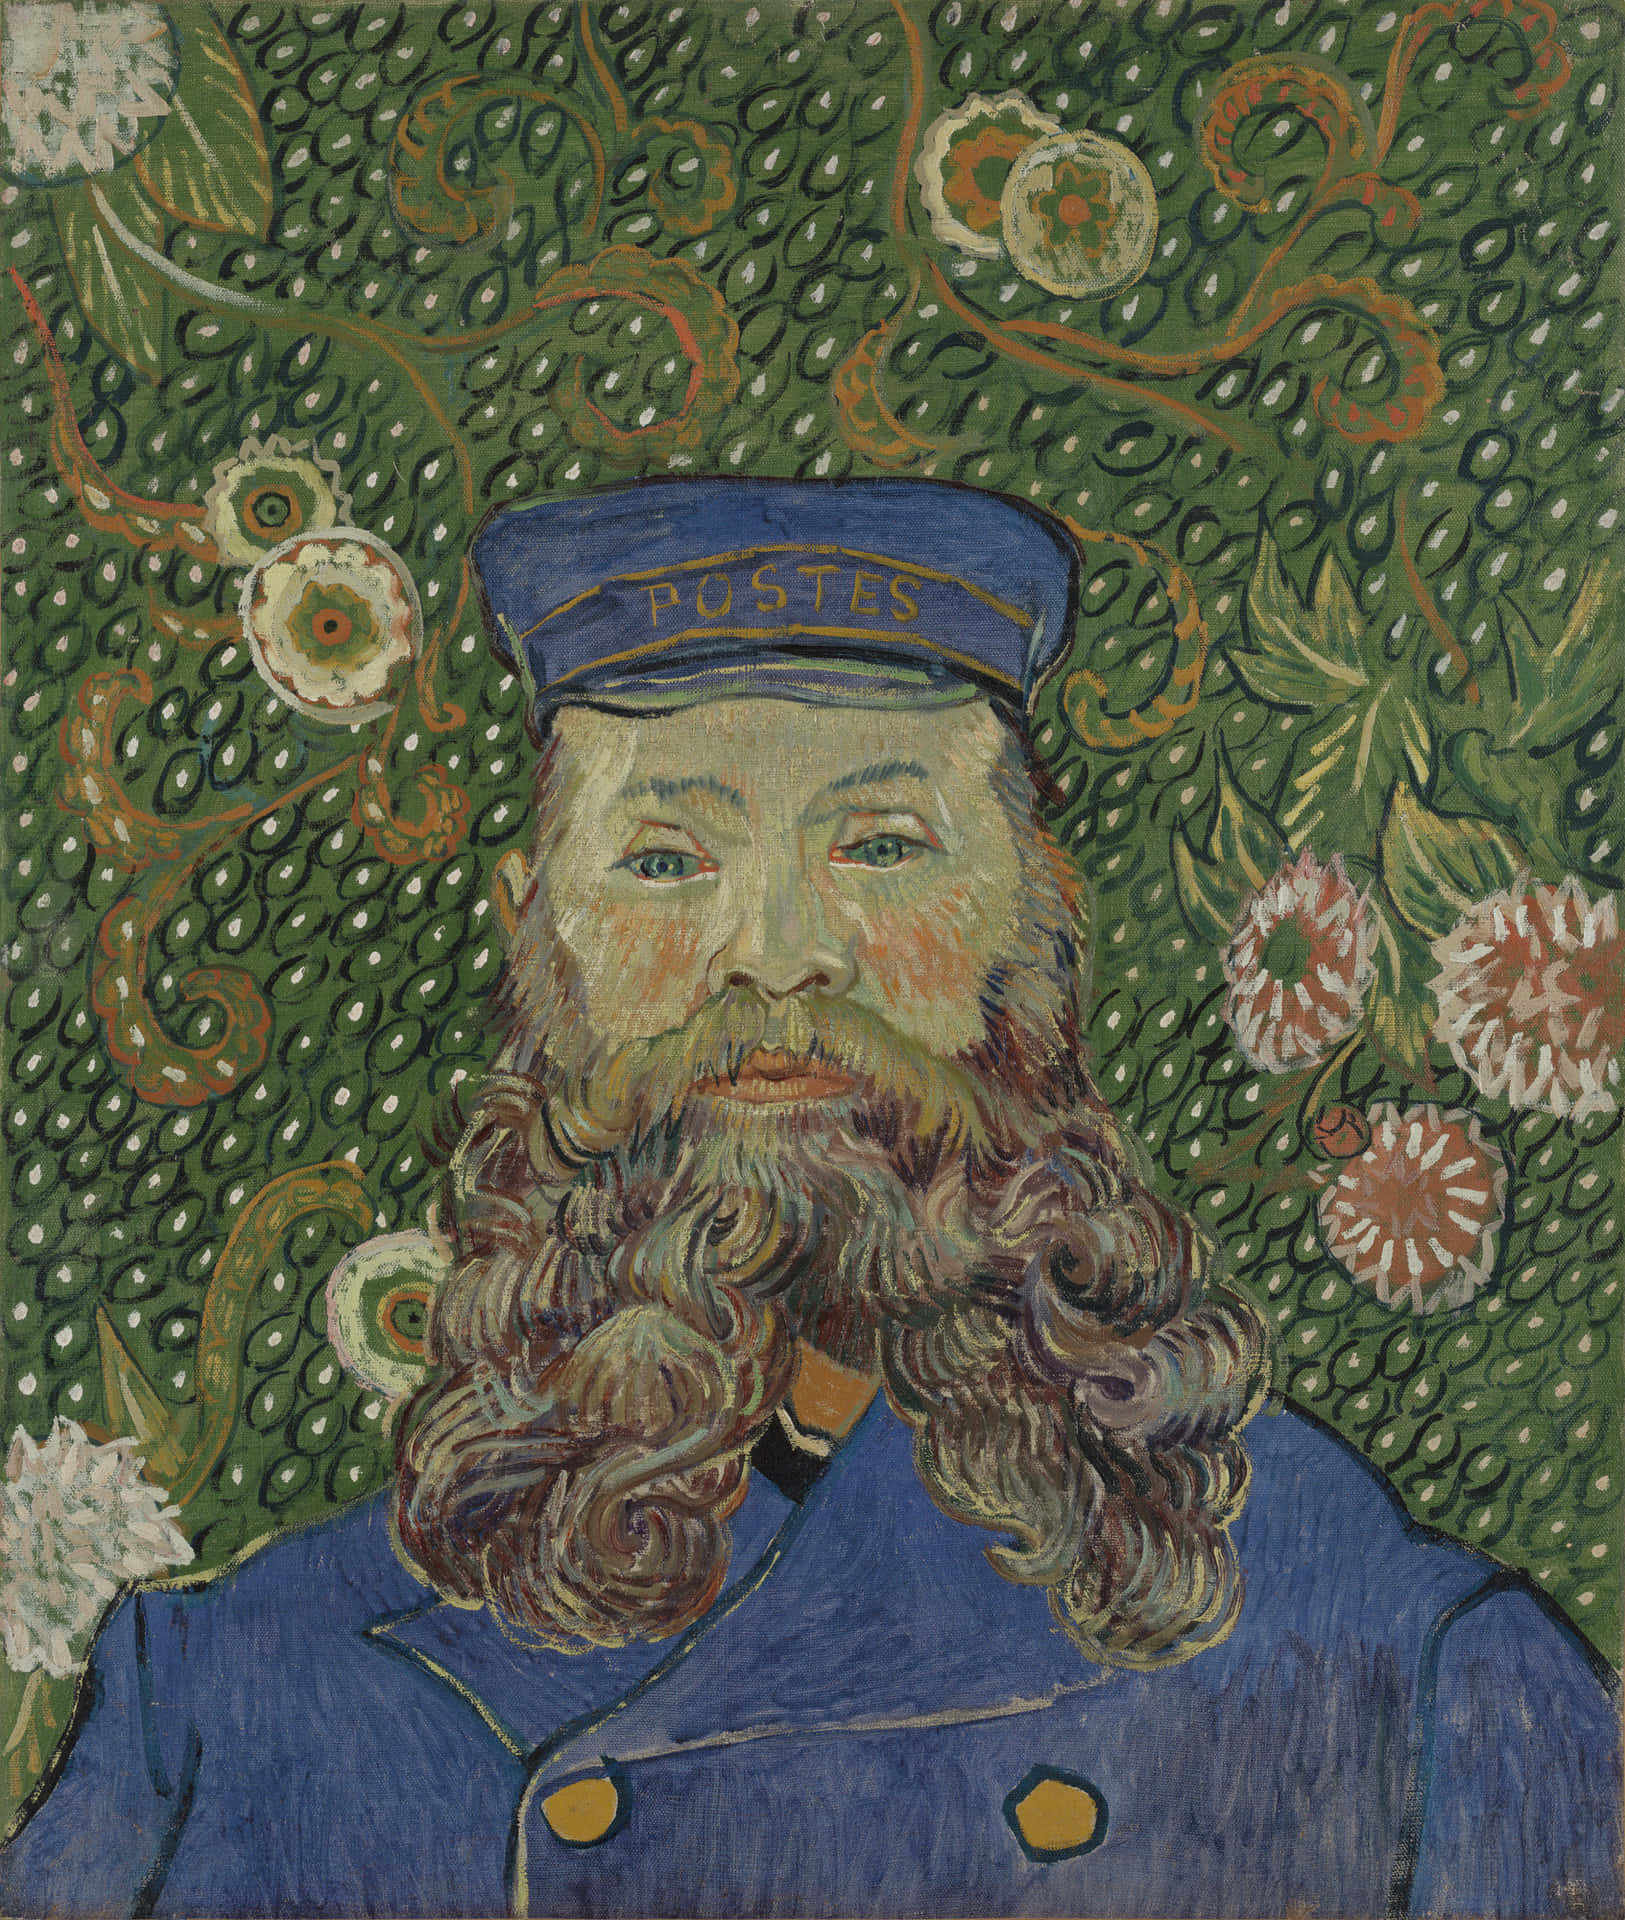 Unaricreazione Della Notte Stellata Di Van Gogh.